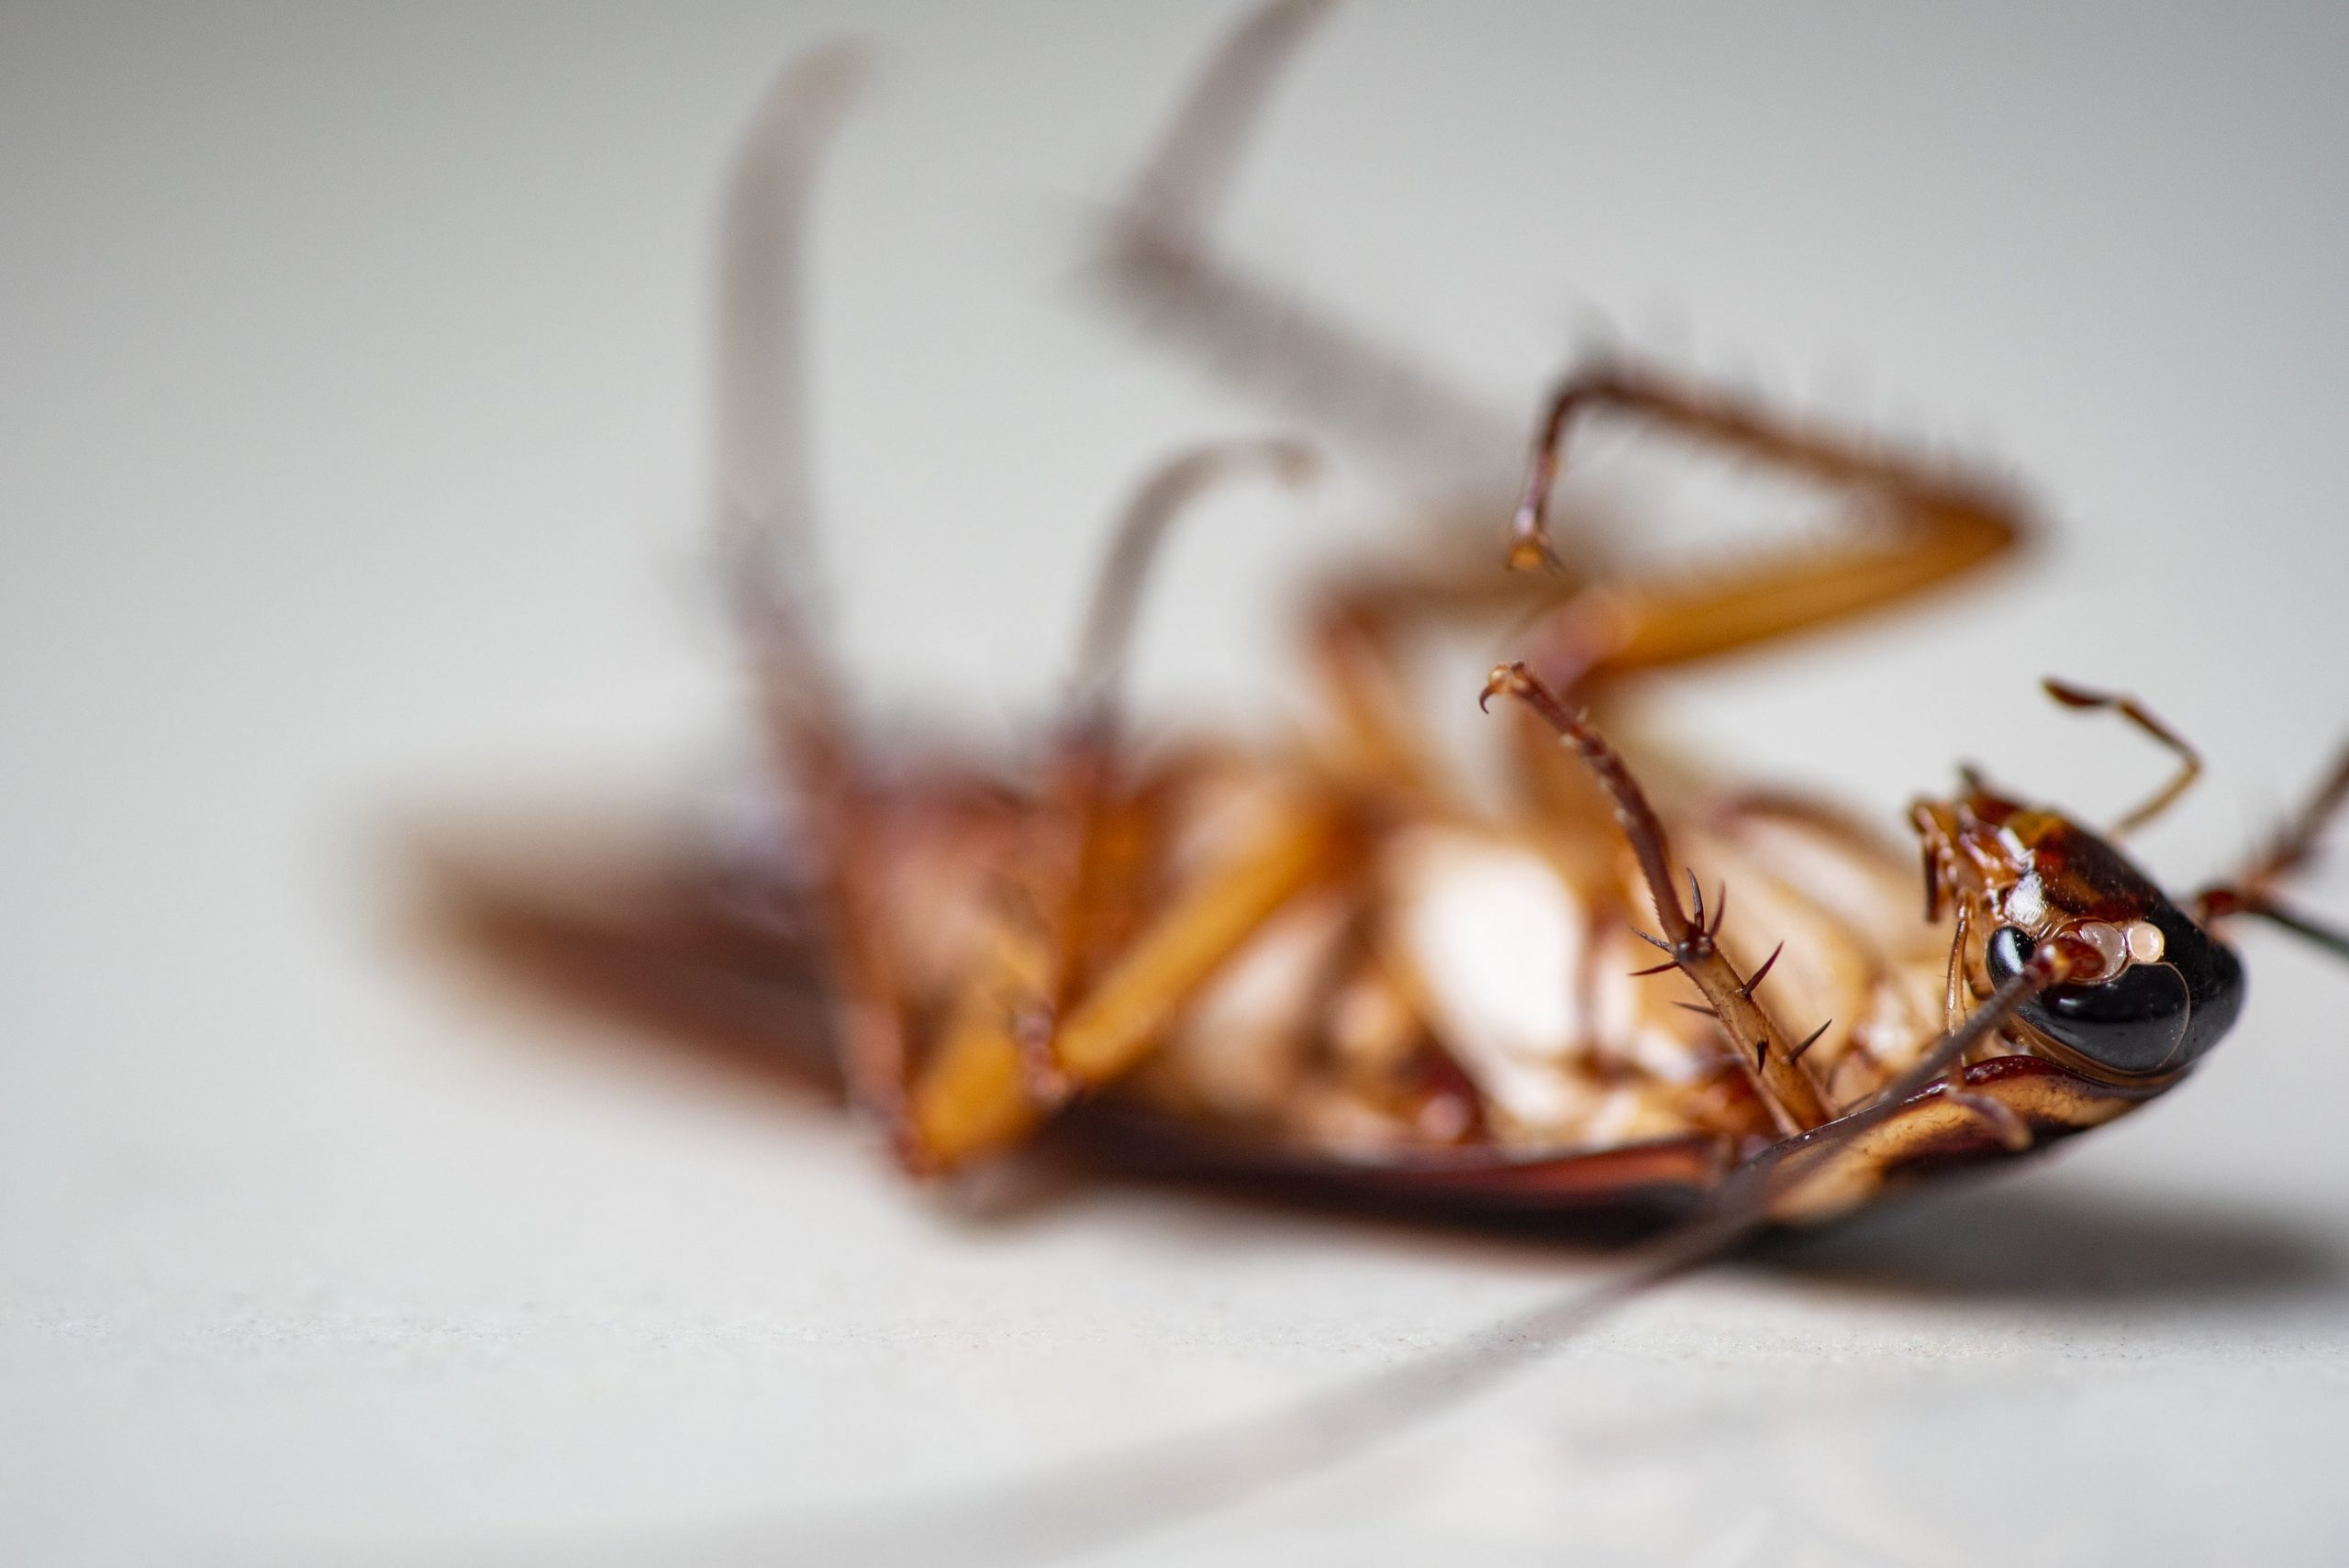 Are cockroaches dangerous? alt